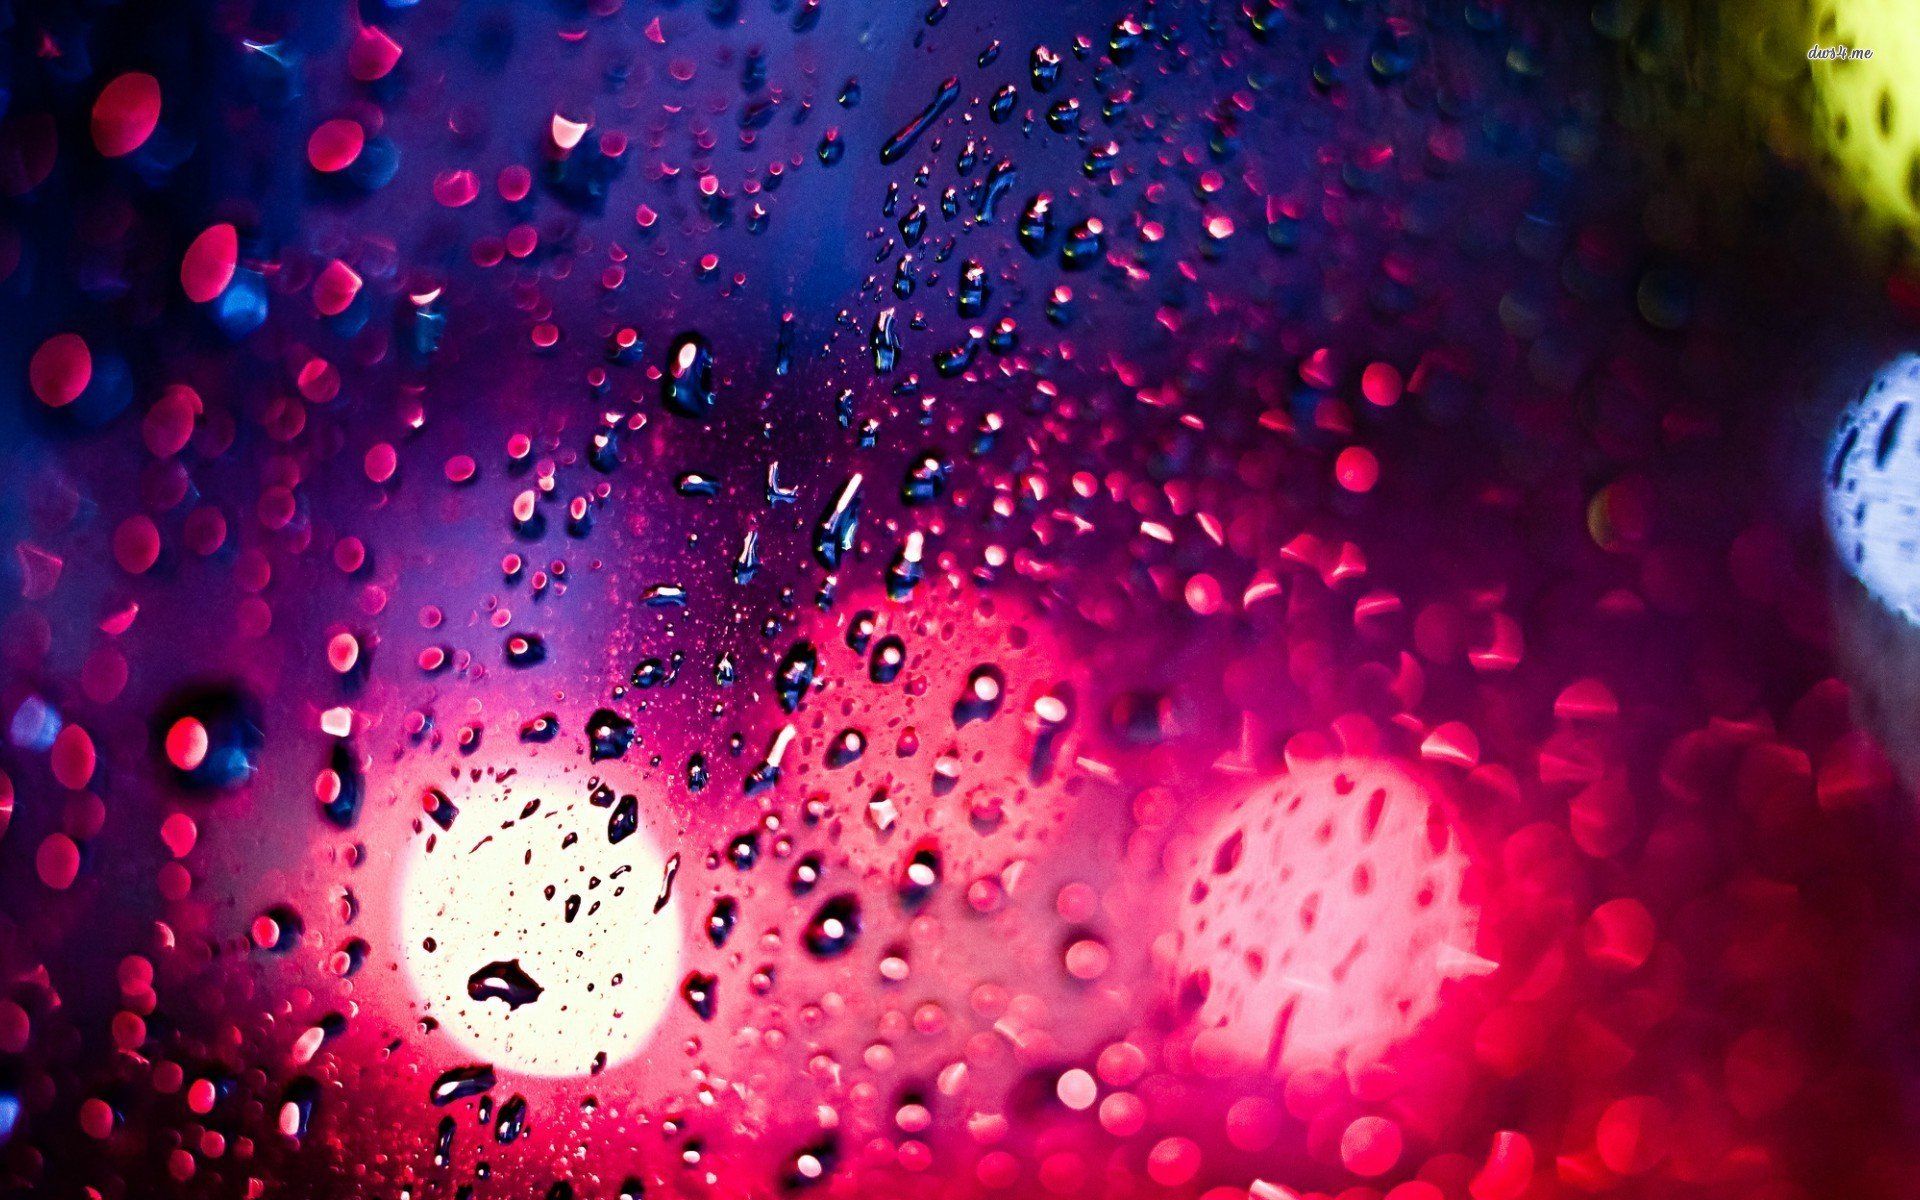 Rain HD Wallpaper free download .pixelstalk.net